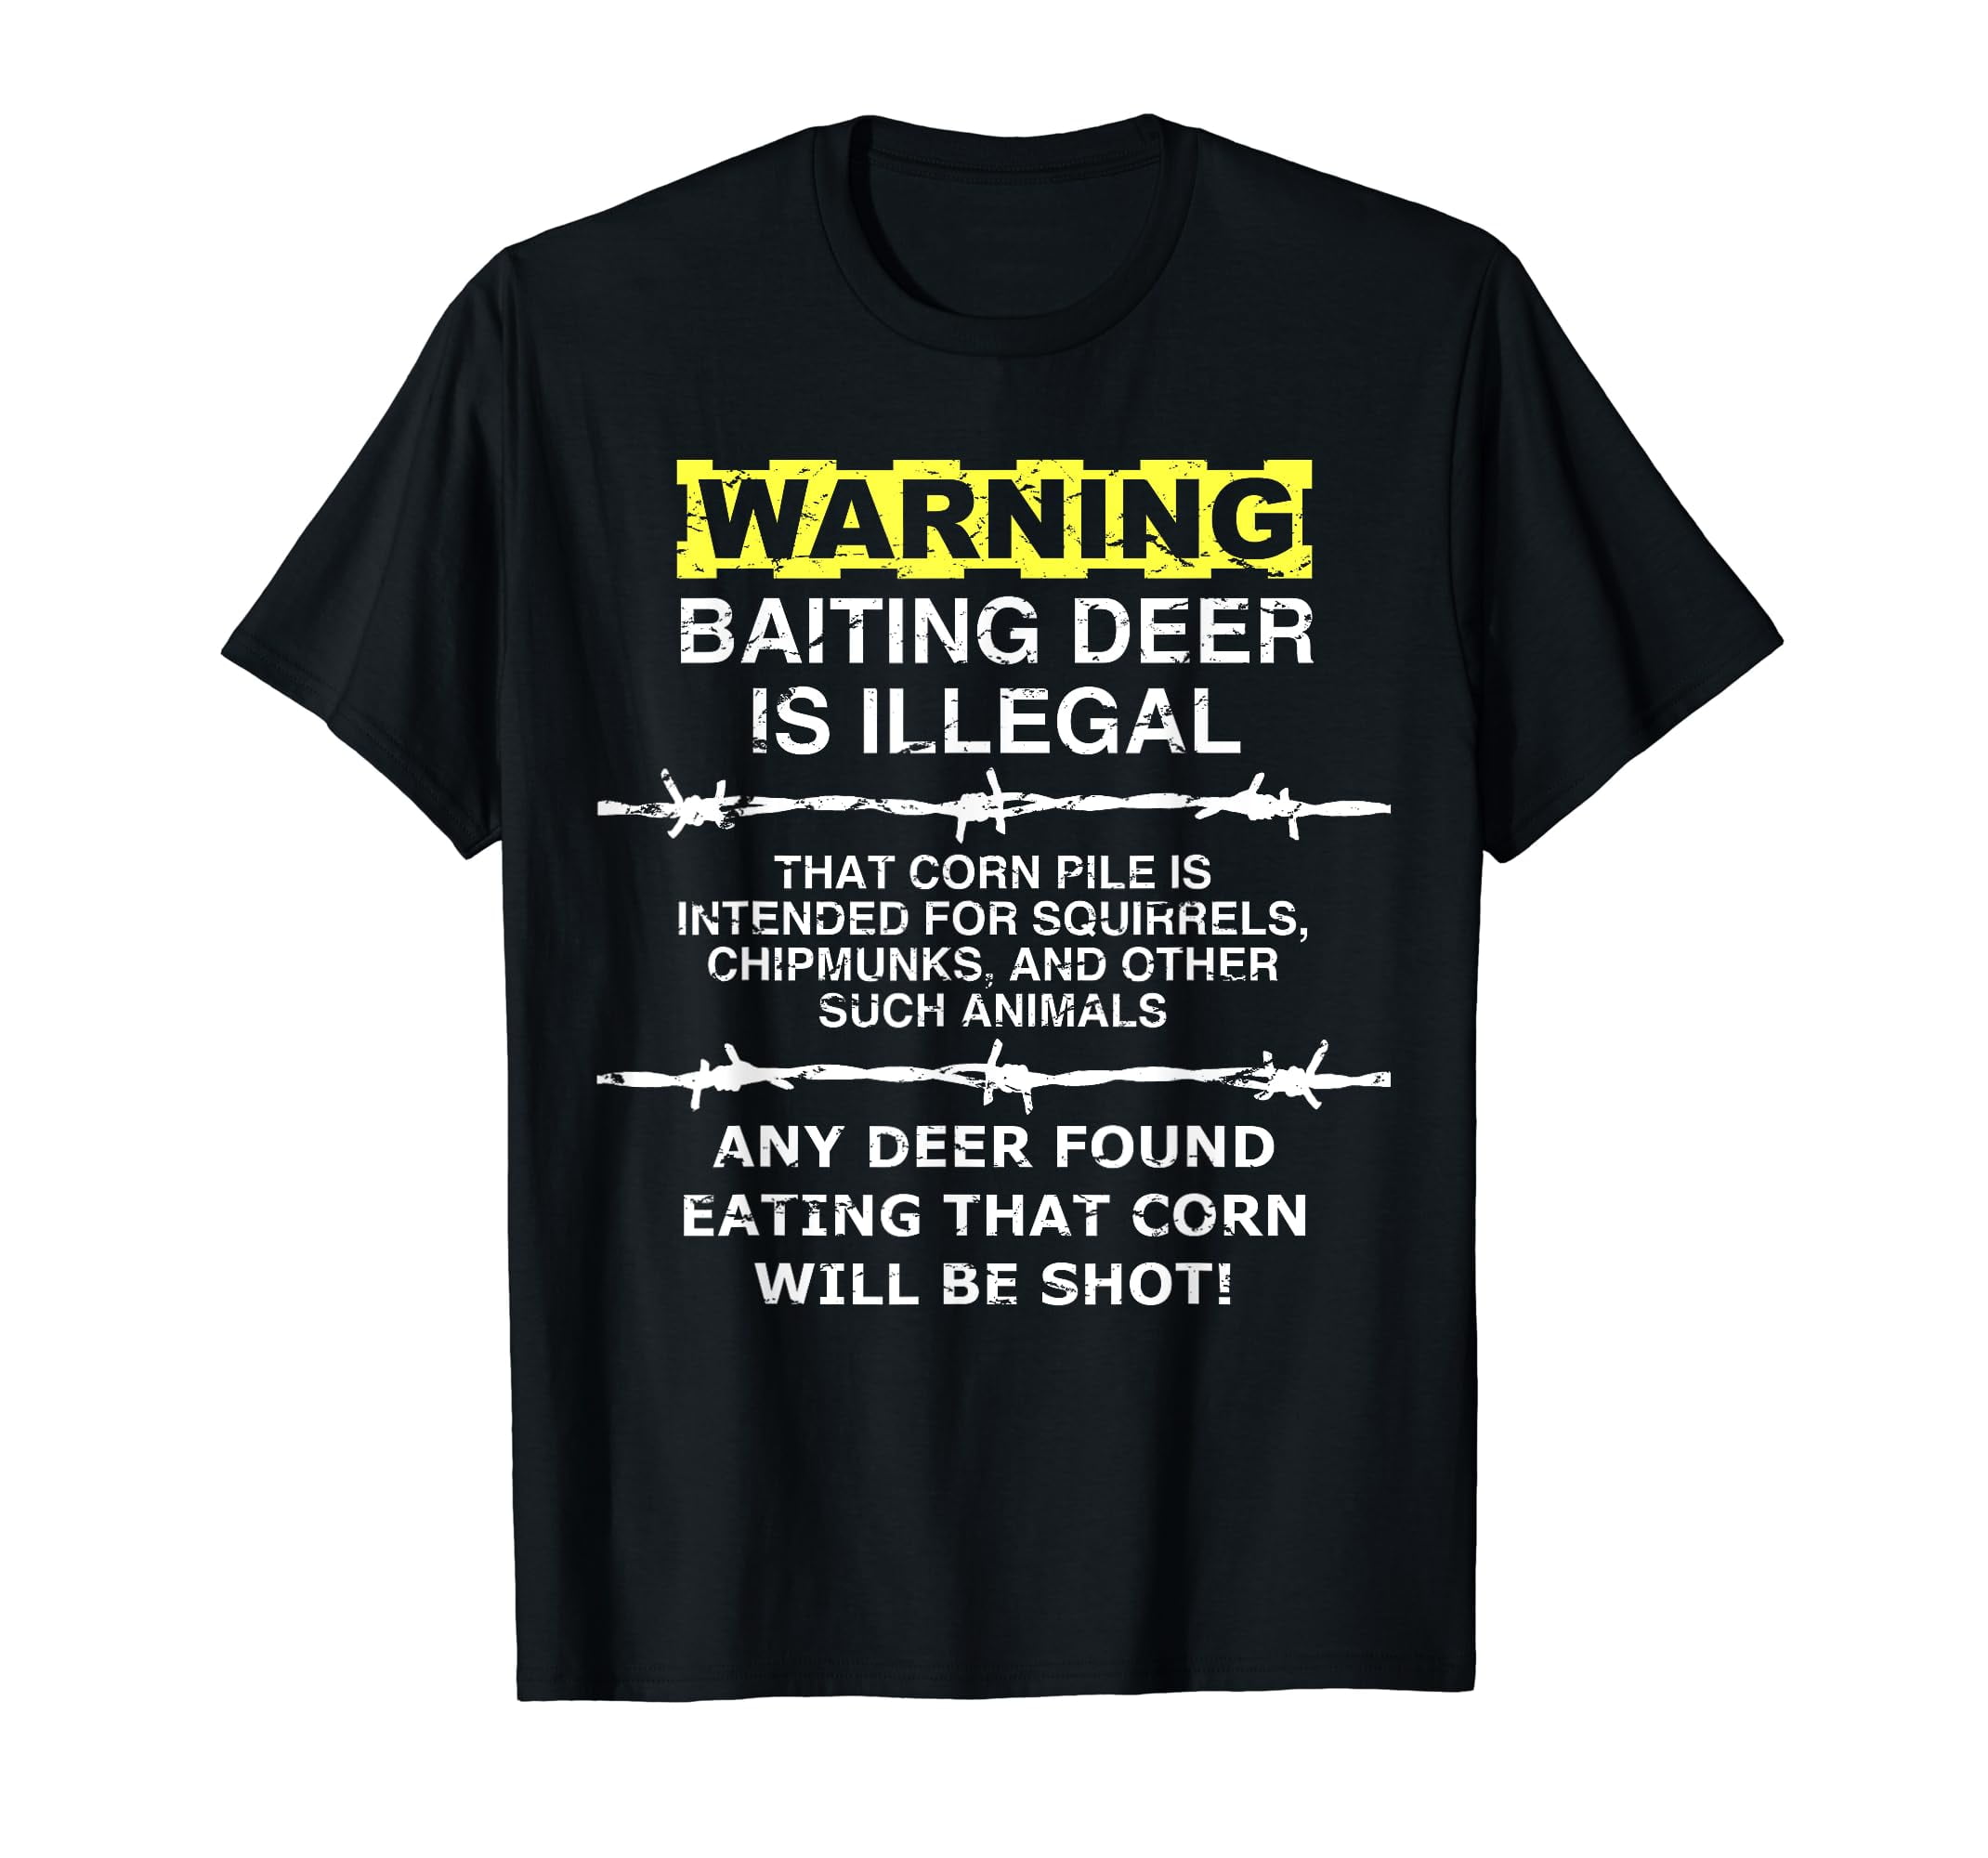 WARNING - Baiting Deer Is Illegal, Funny Hunting Tee Shirt - Walmart.com